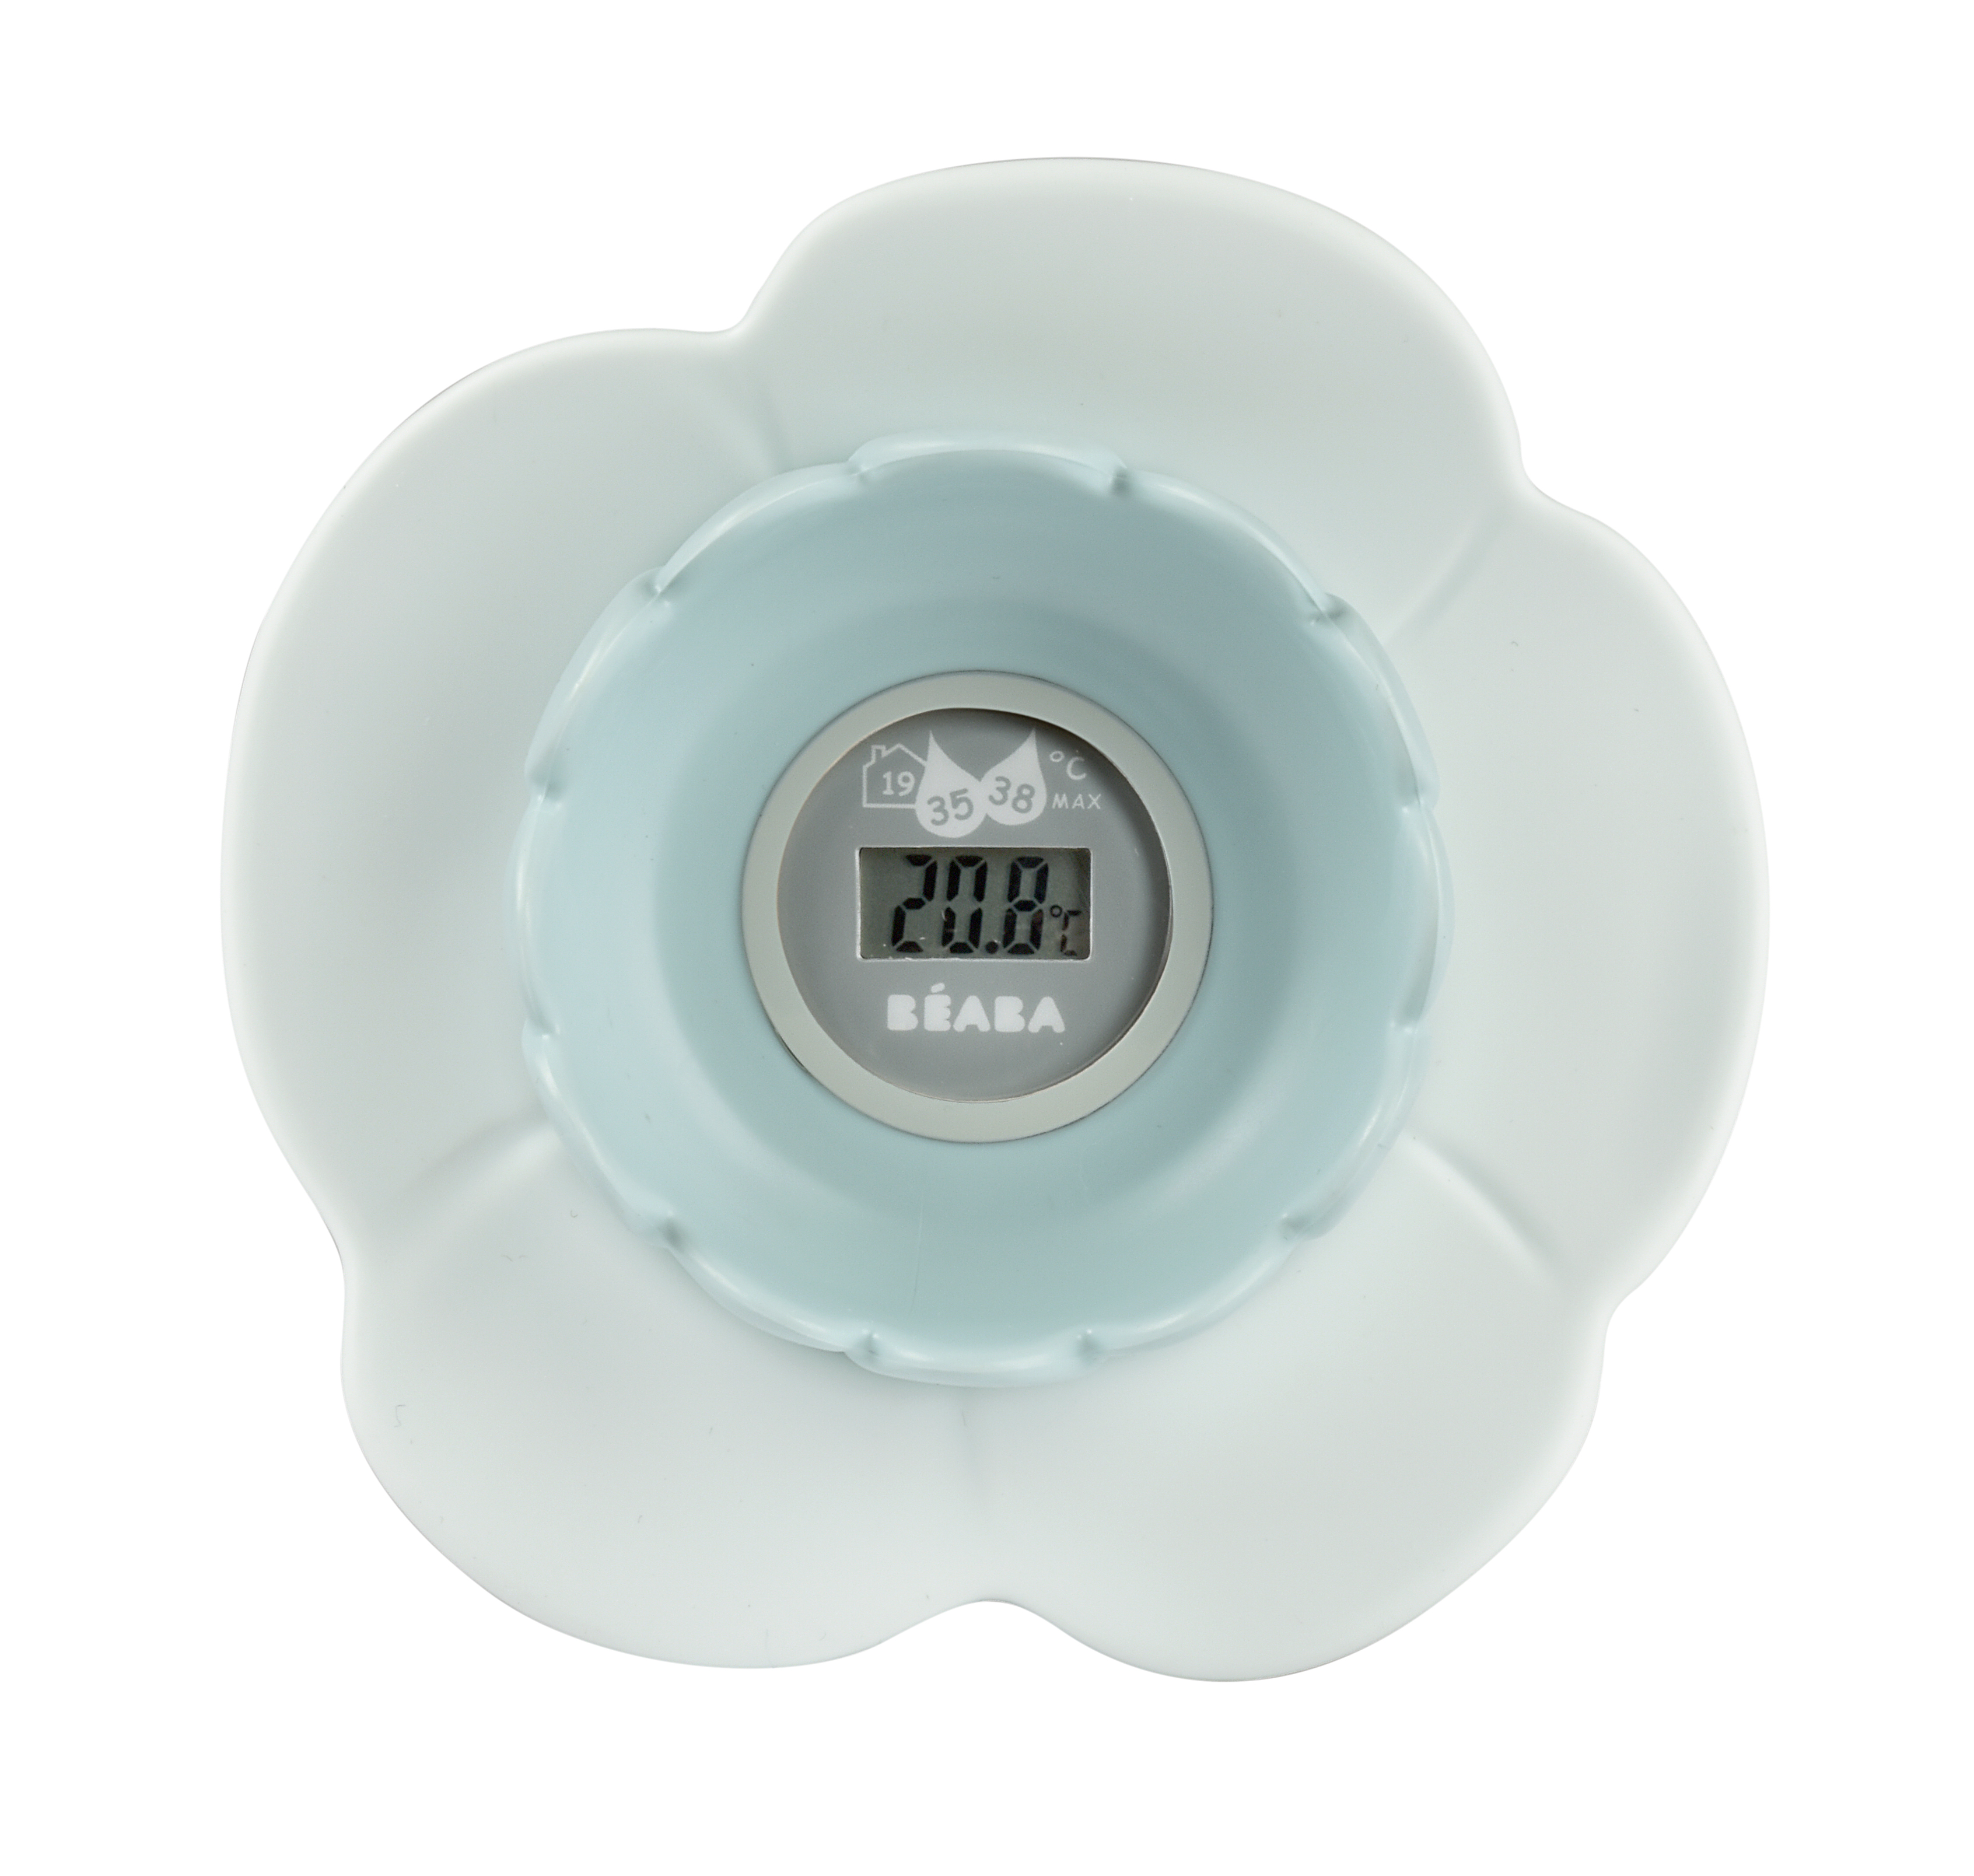 Термометр для воды и воздуха детский Beaba LOTUS Комнатный, голубой термометр для воды и воздуха детский beaba lotus комнатный розовый